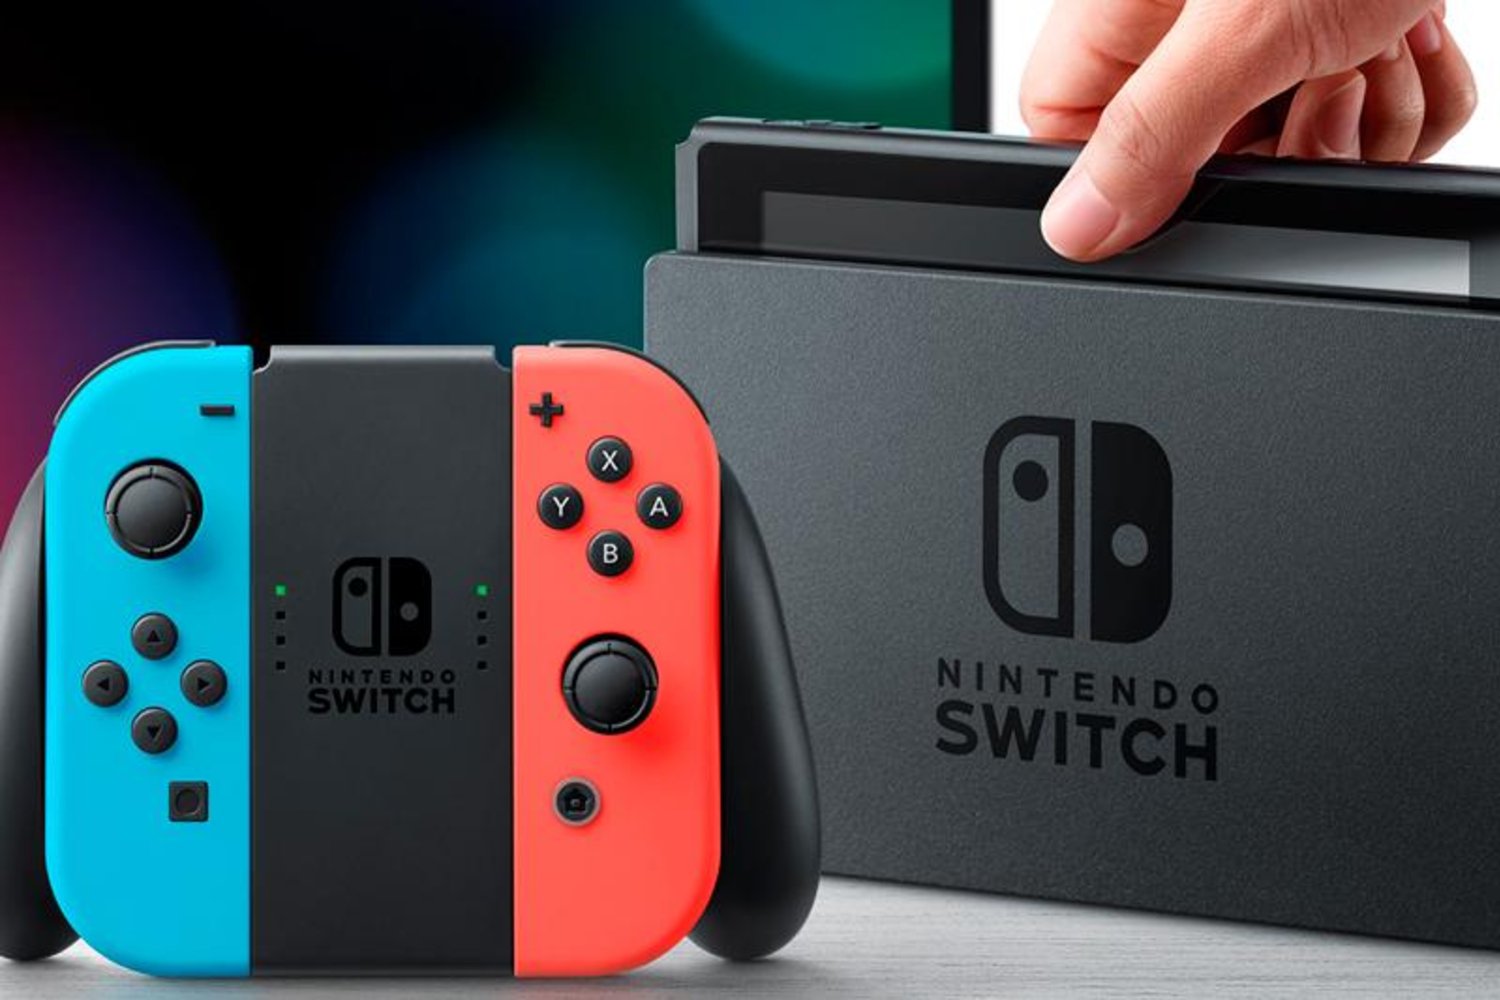 Nintendo Switch, Nintendo Switch док, Nintendo Switch grip